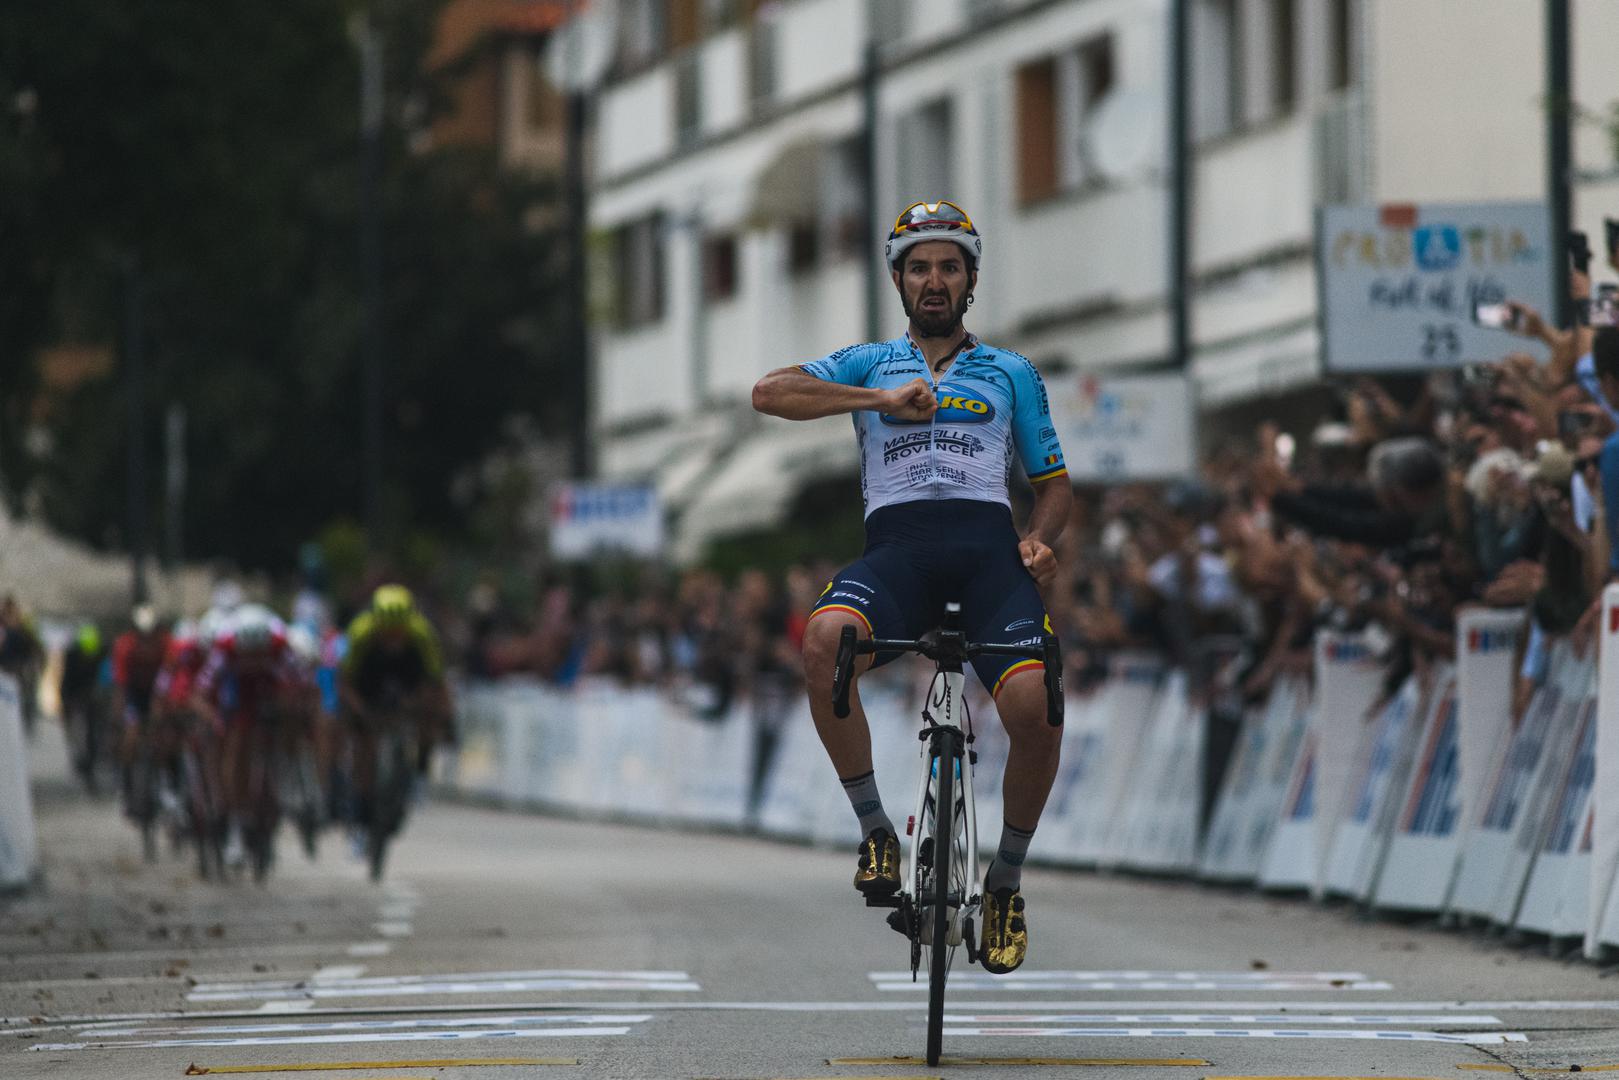 Rumunjski biciklist Eduard-Michael Grosu, član francuske momčadi Delko Marseille, pobjednik je druge etape CRO Racea vožene u srijedu od Slunja do Zadra u dužini od 183 kilometra, a pobjedom u etapi on je ujedno preuzeo i vodstvo u ukupnom redoslijedu.